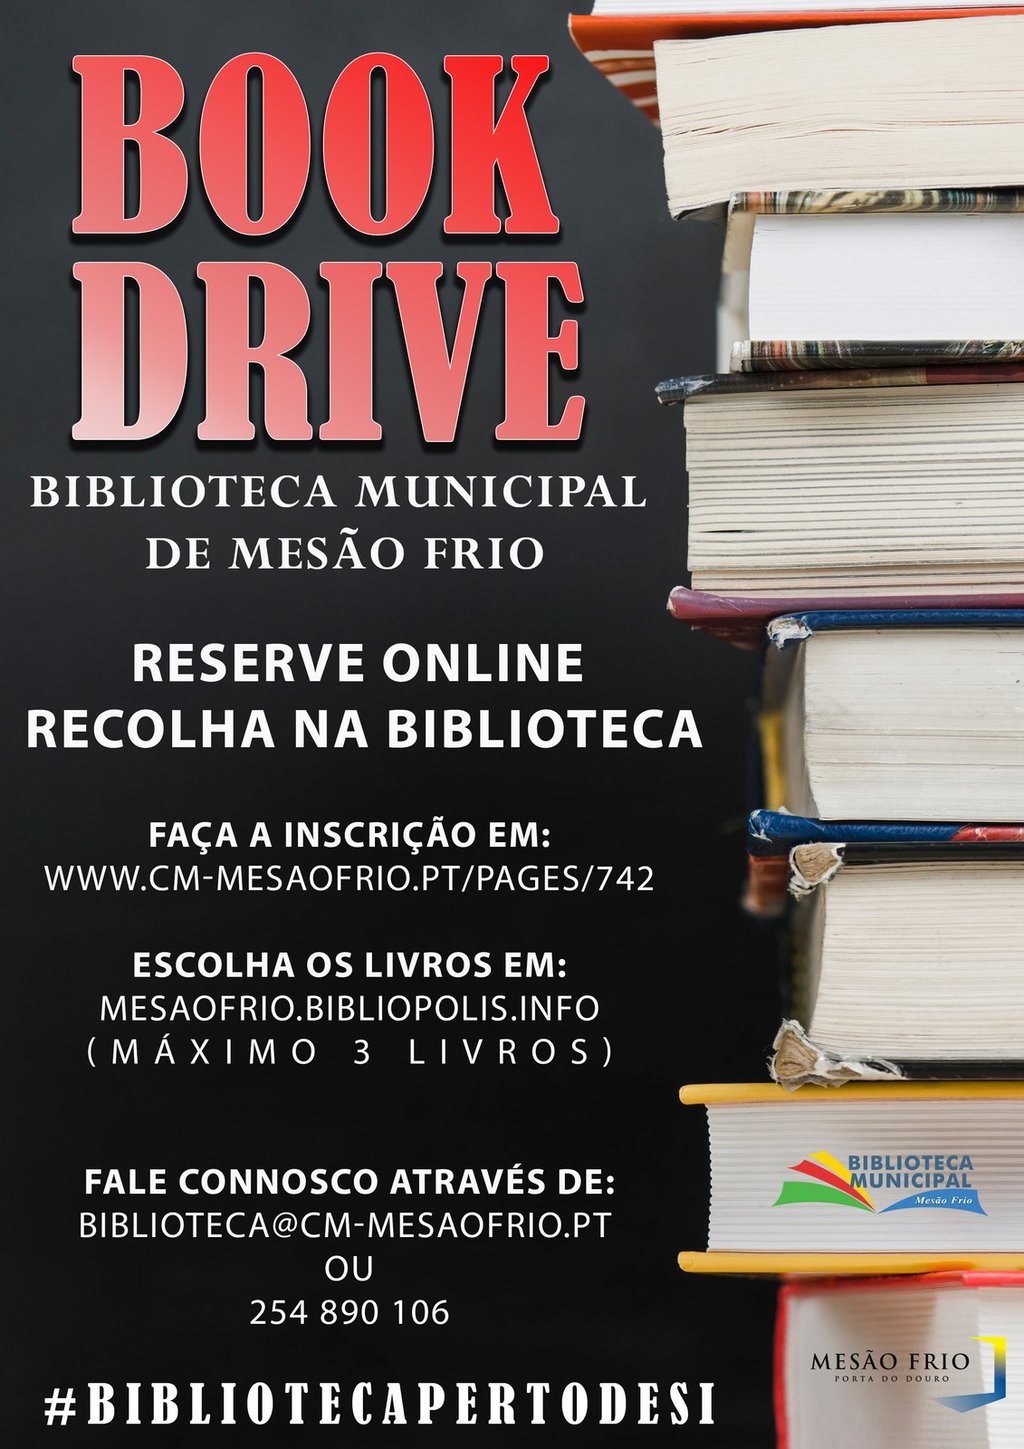 Biblioteca Municipal de Mesão Frio lança serviço de requisição «Book Drive»